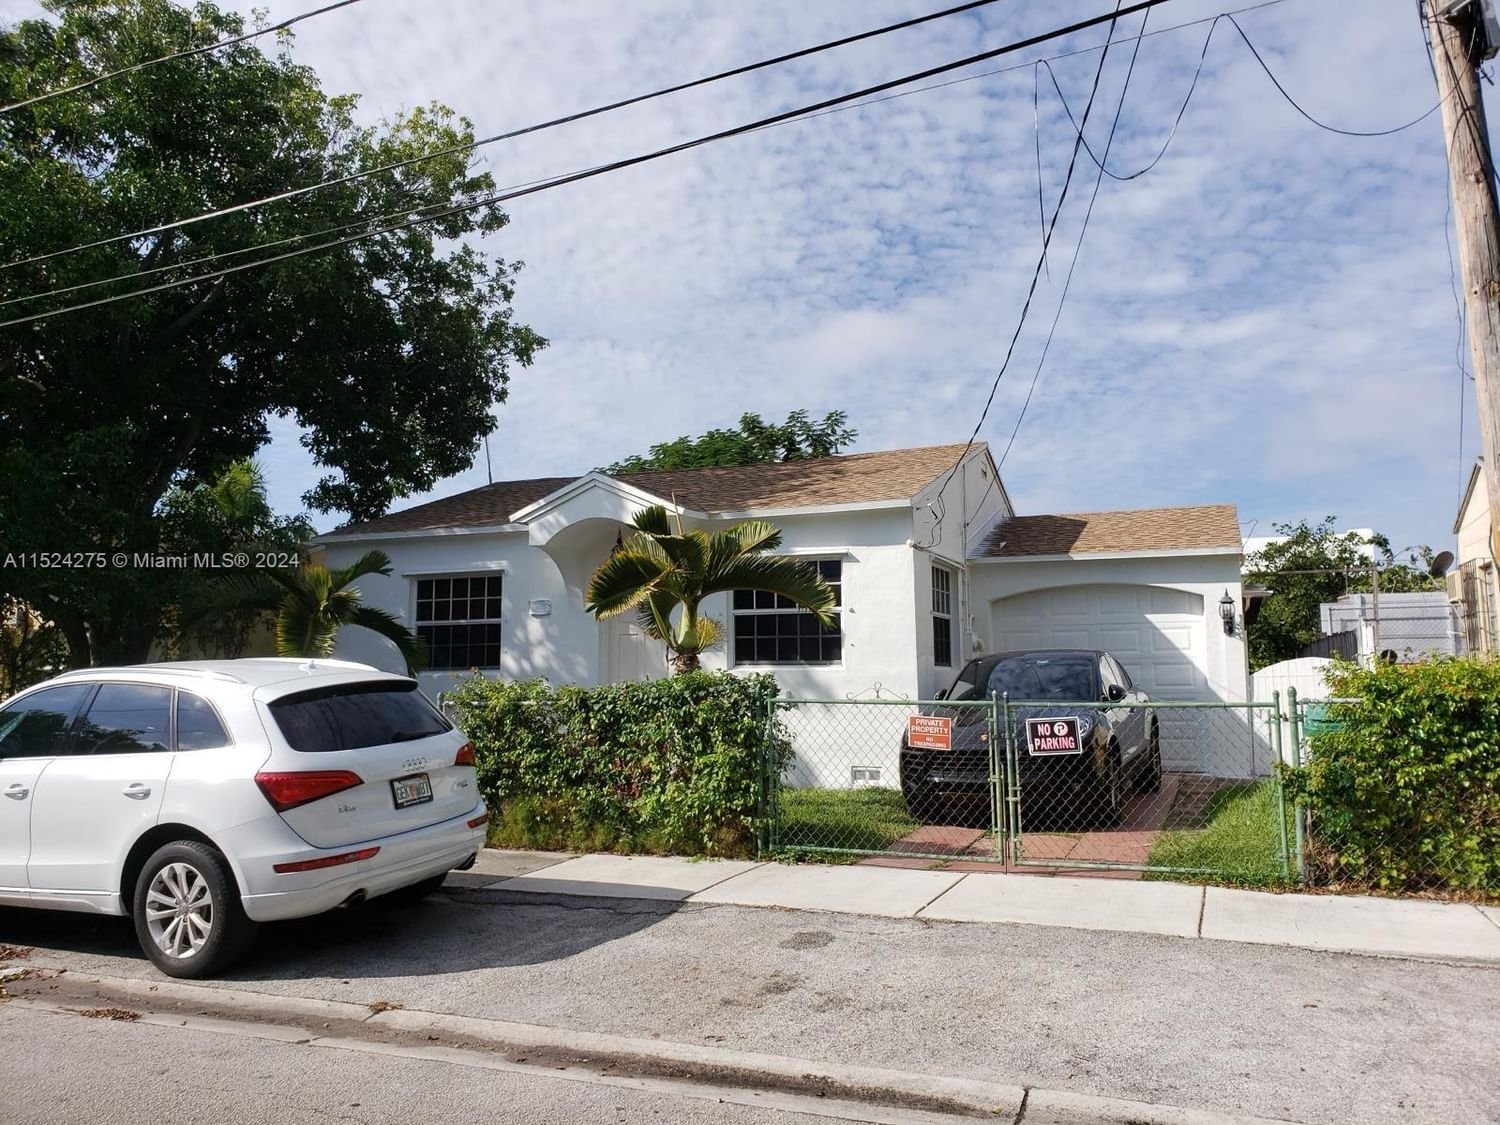 Real estate property located at 912 9th Ave, Miami-Dade County, STUARTS SUB, Miami, FL